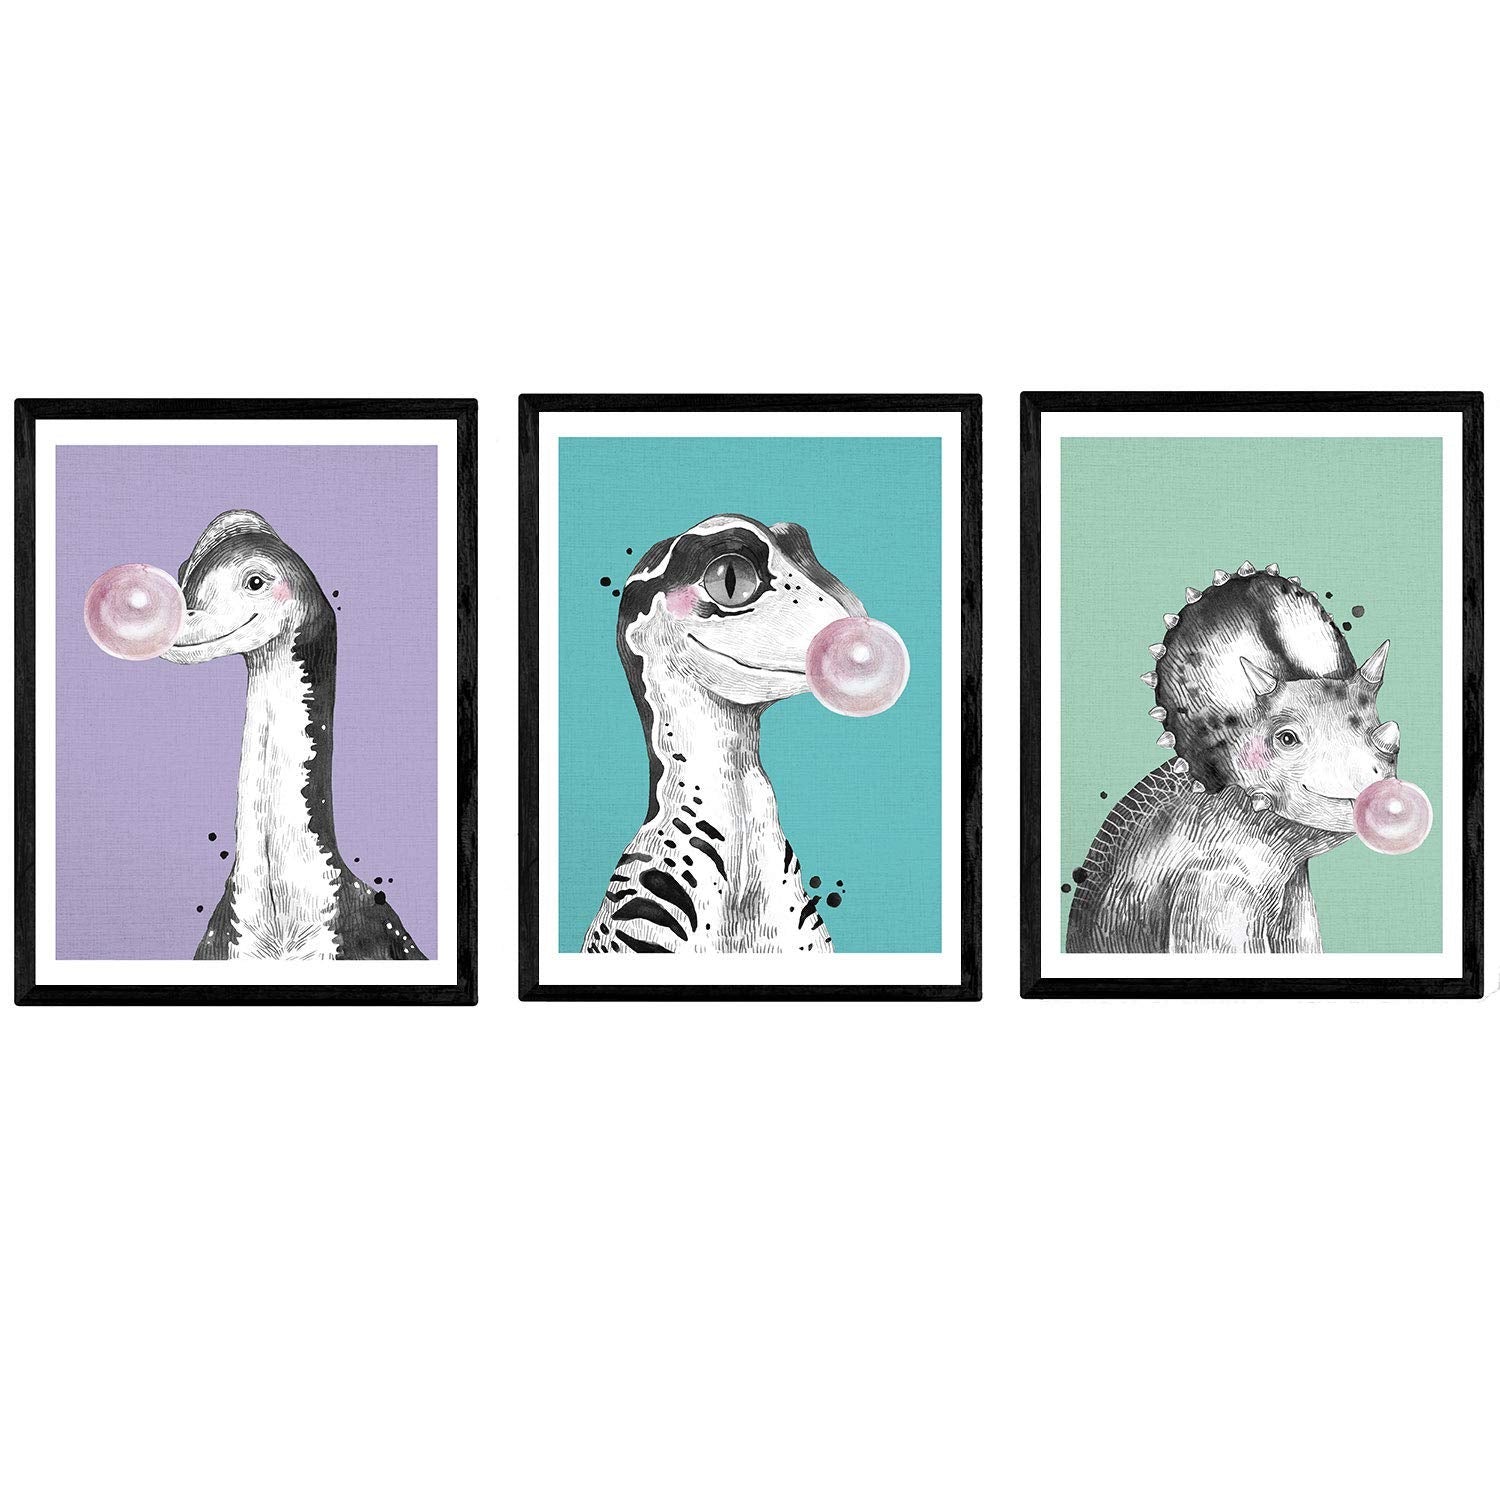 I Poster Di Dinosauri Confezionano Con Gomma. Fogli Di Dinosauri Per Bambini.  A4 Senza Cornice